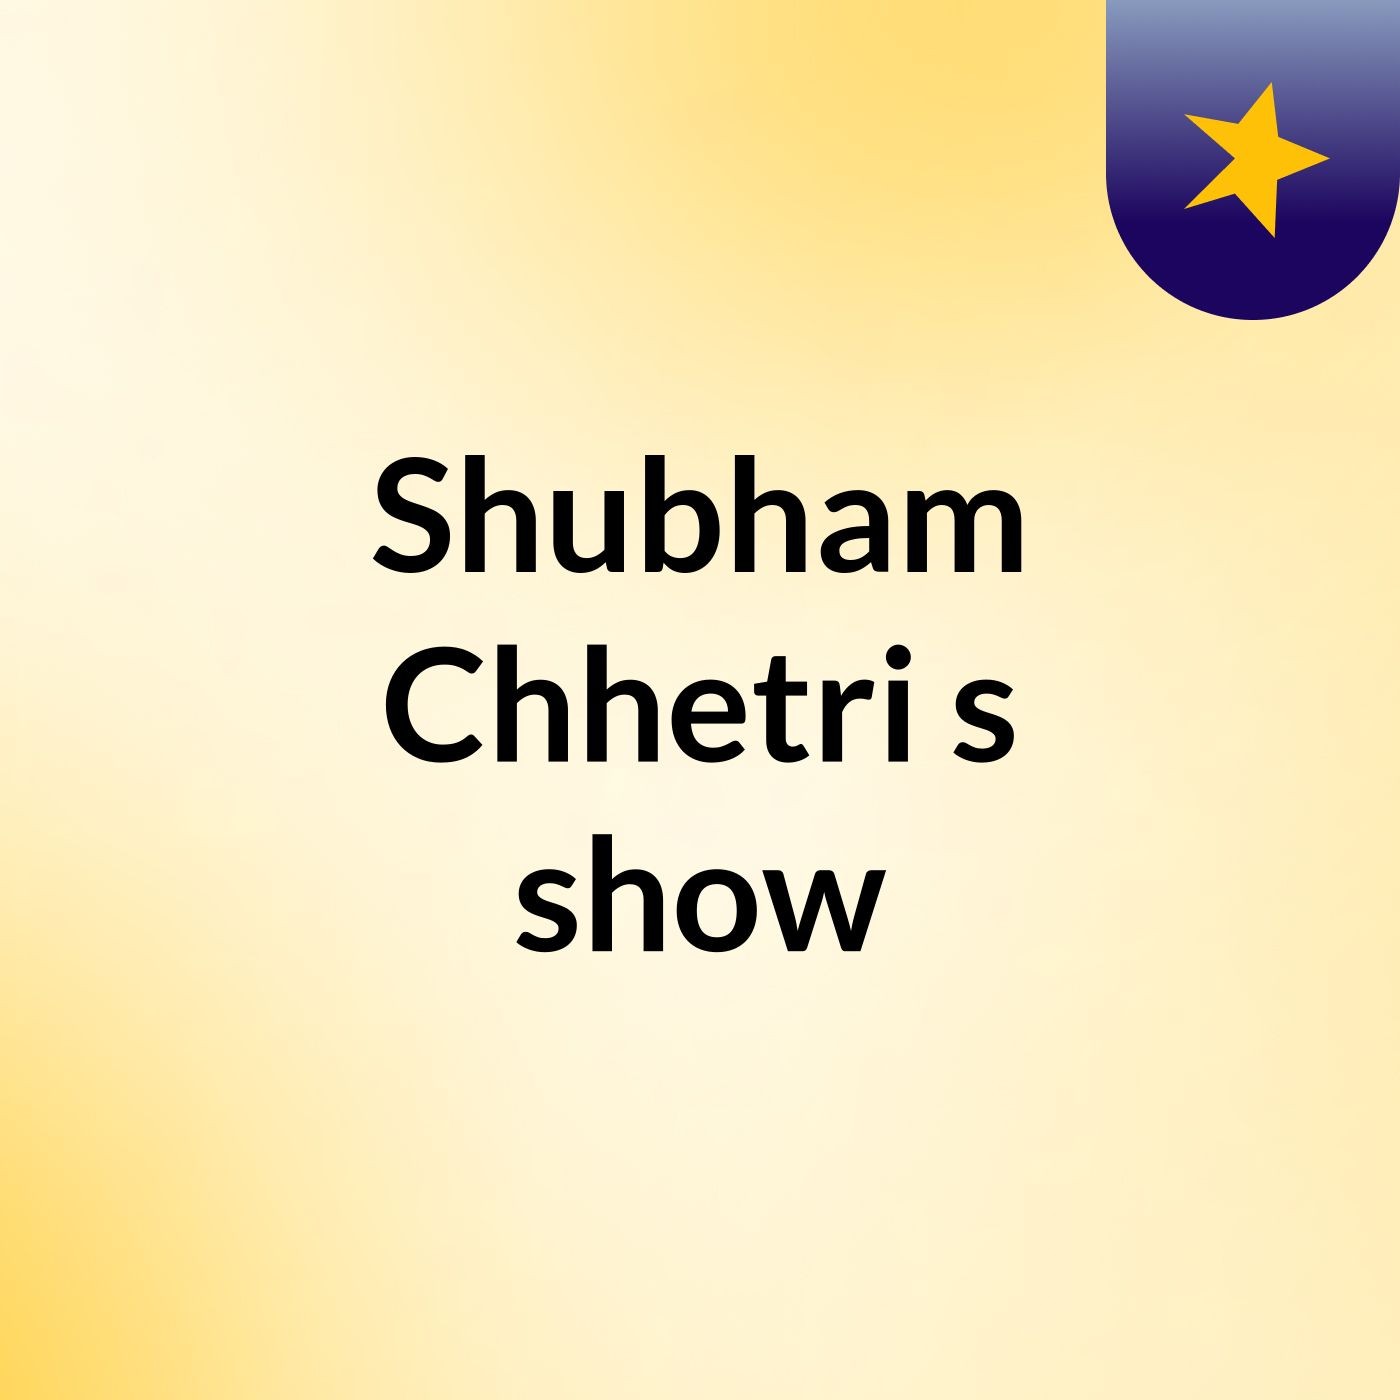 Shubham Chhetri's show